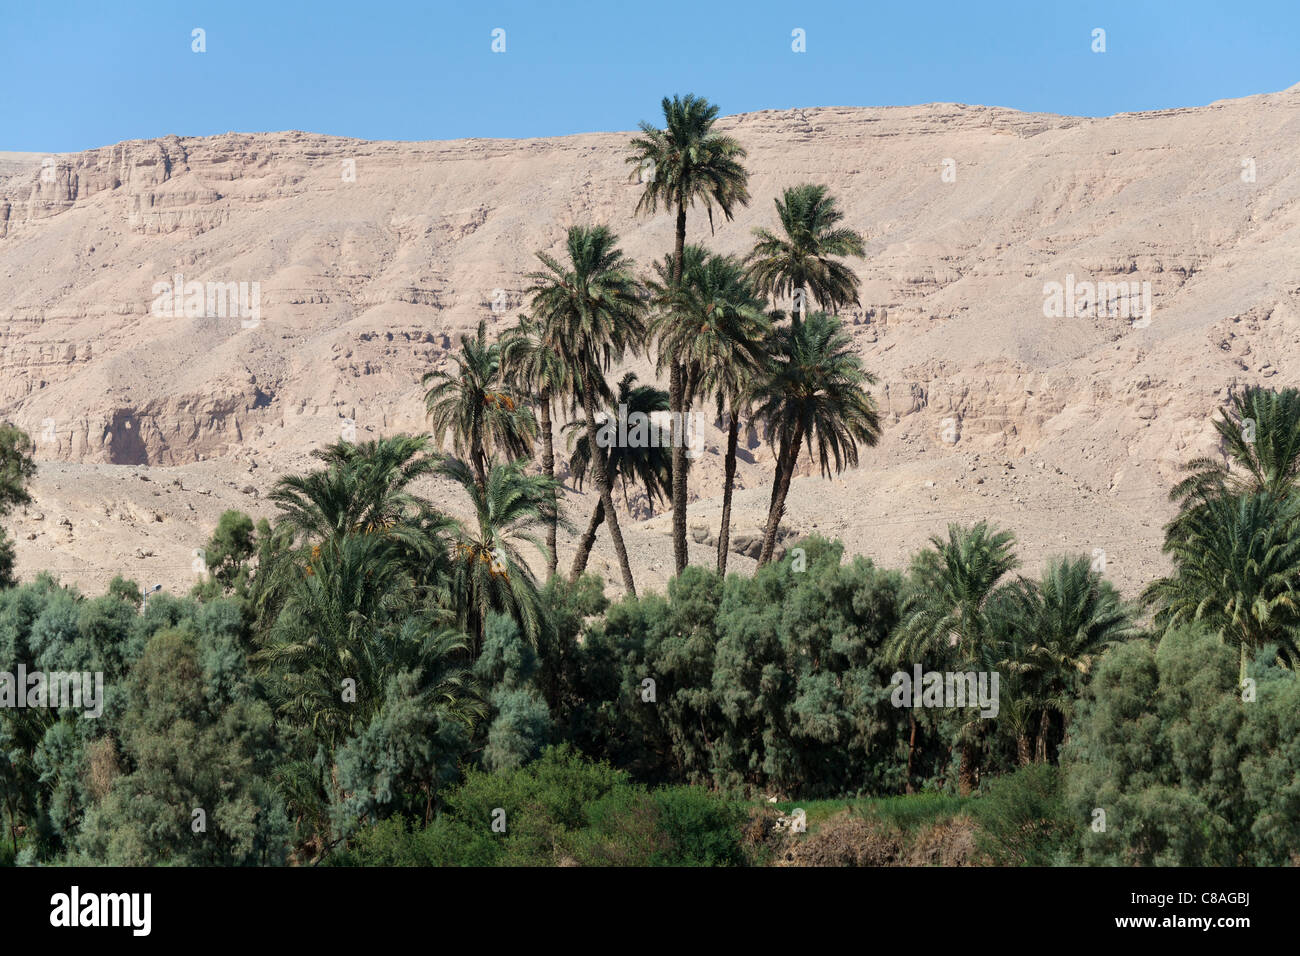 Tall y palmas y árboles de mediana altura con un telón de fondo de las montañas del desierto y el cielo azul, el río Nilo, Egipto, África Foto de stock